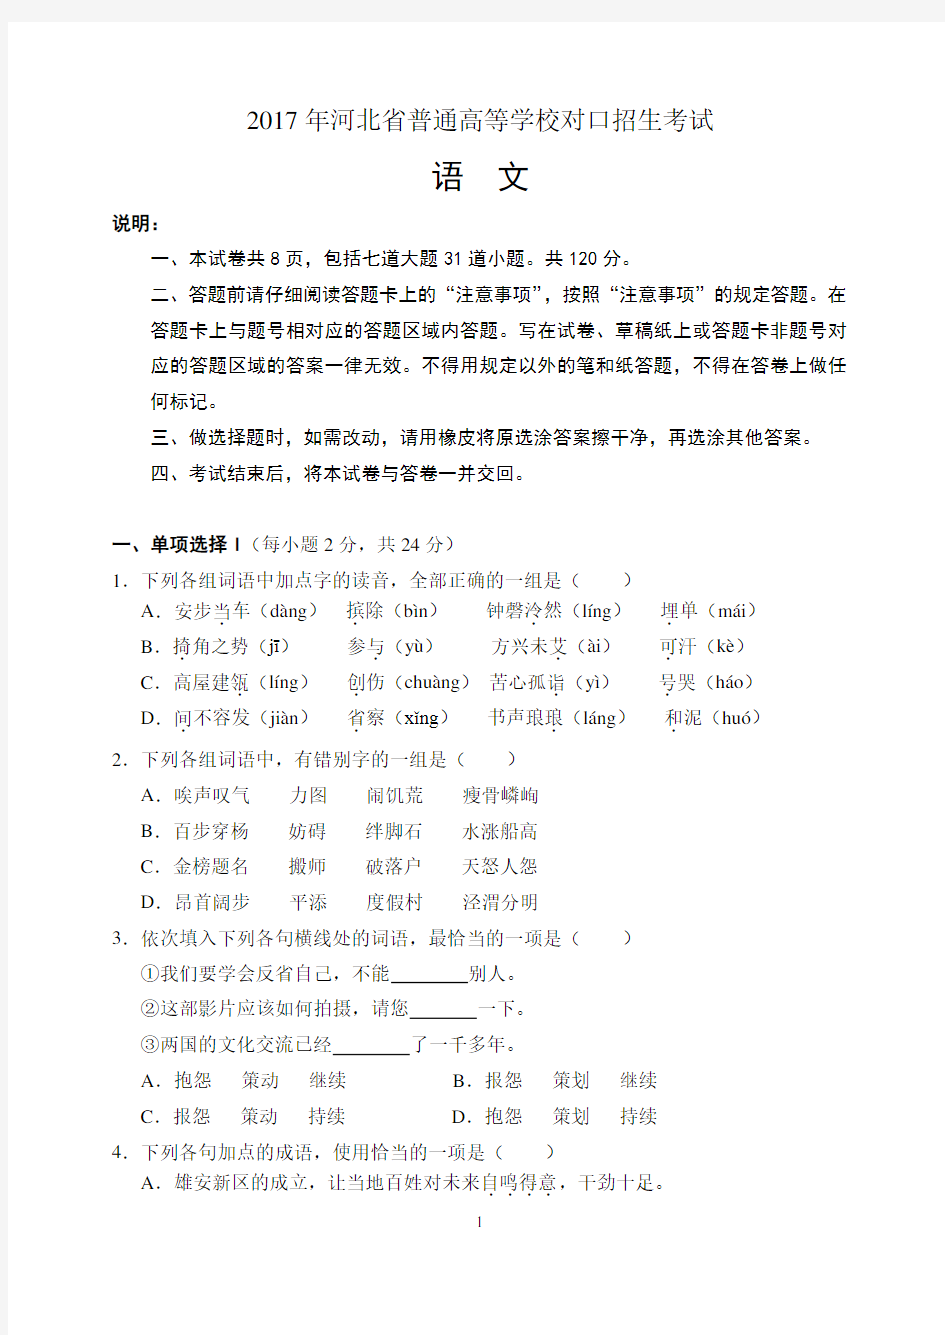 2017年河北省普通高等学校对口招生考试试题及答案2017.11.23